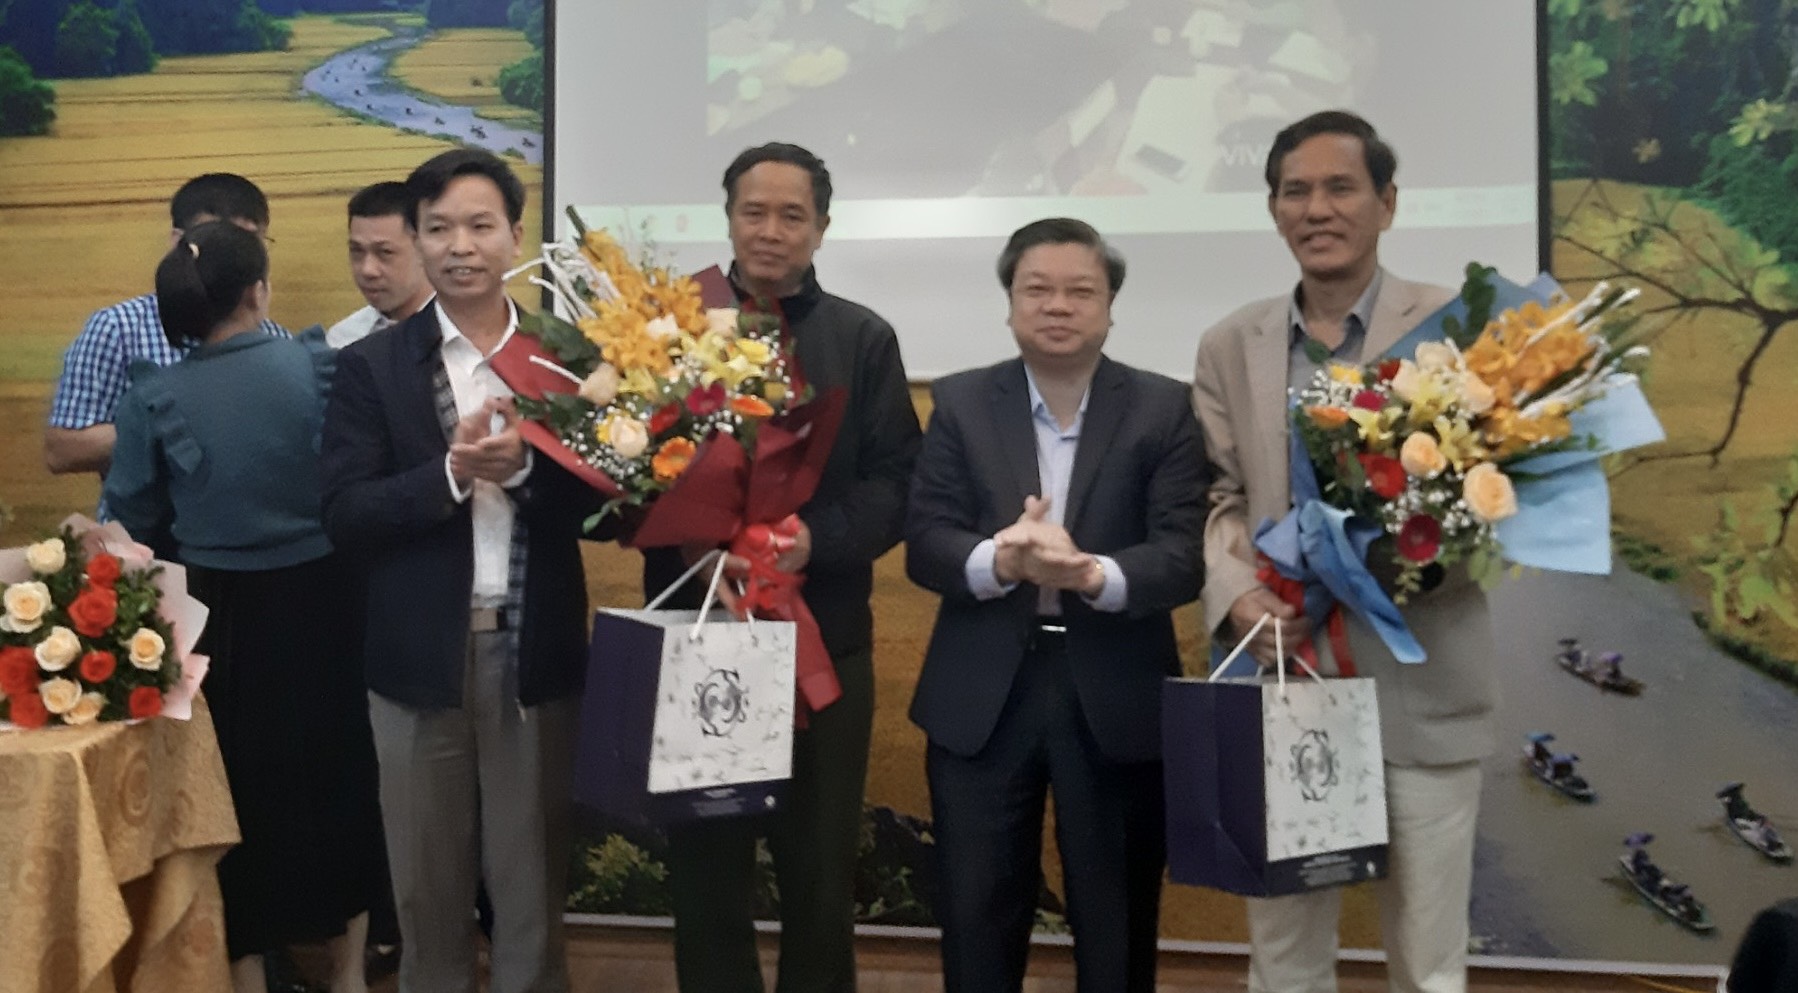 Trung tâm GDQPAN tổ chức tri ân đồng chí Nguyễn Ngọc Quy Phó Giám đốc Trung tâm và đồng chí Trịnh Duy Huy Phó Giám đốc Trung tâm nghỉ hưu theo chế độ nhà nước